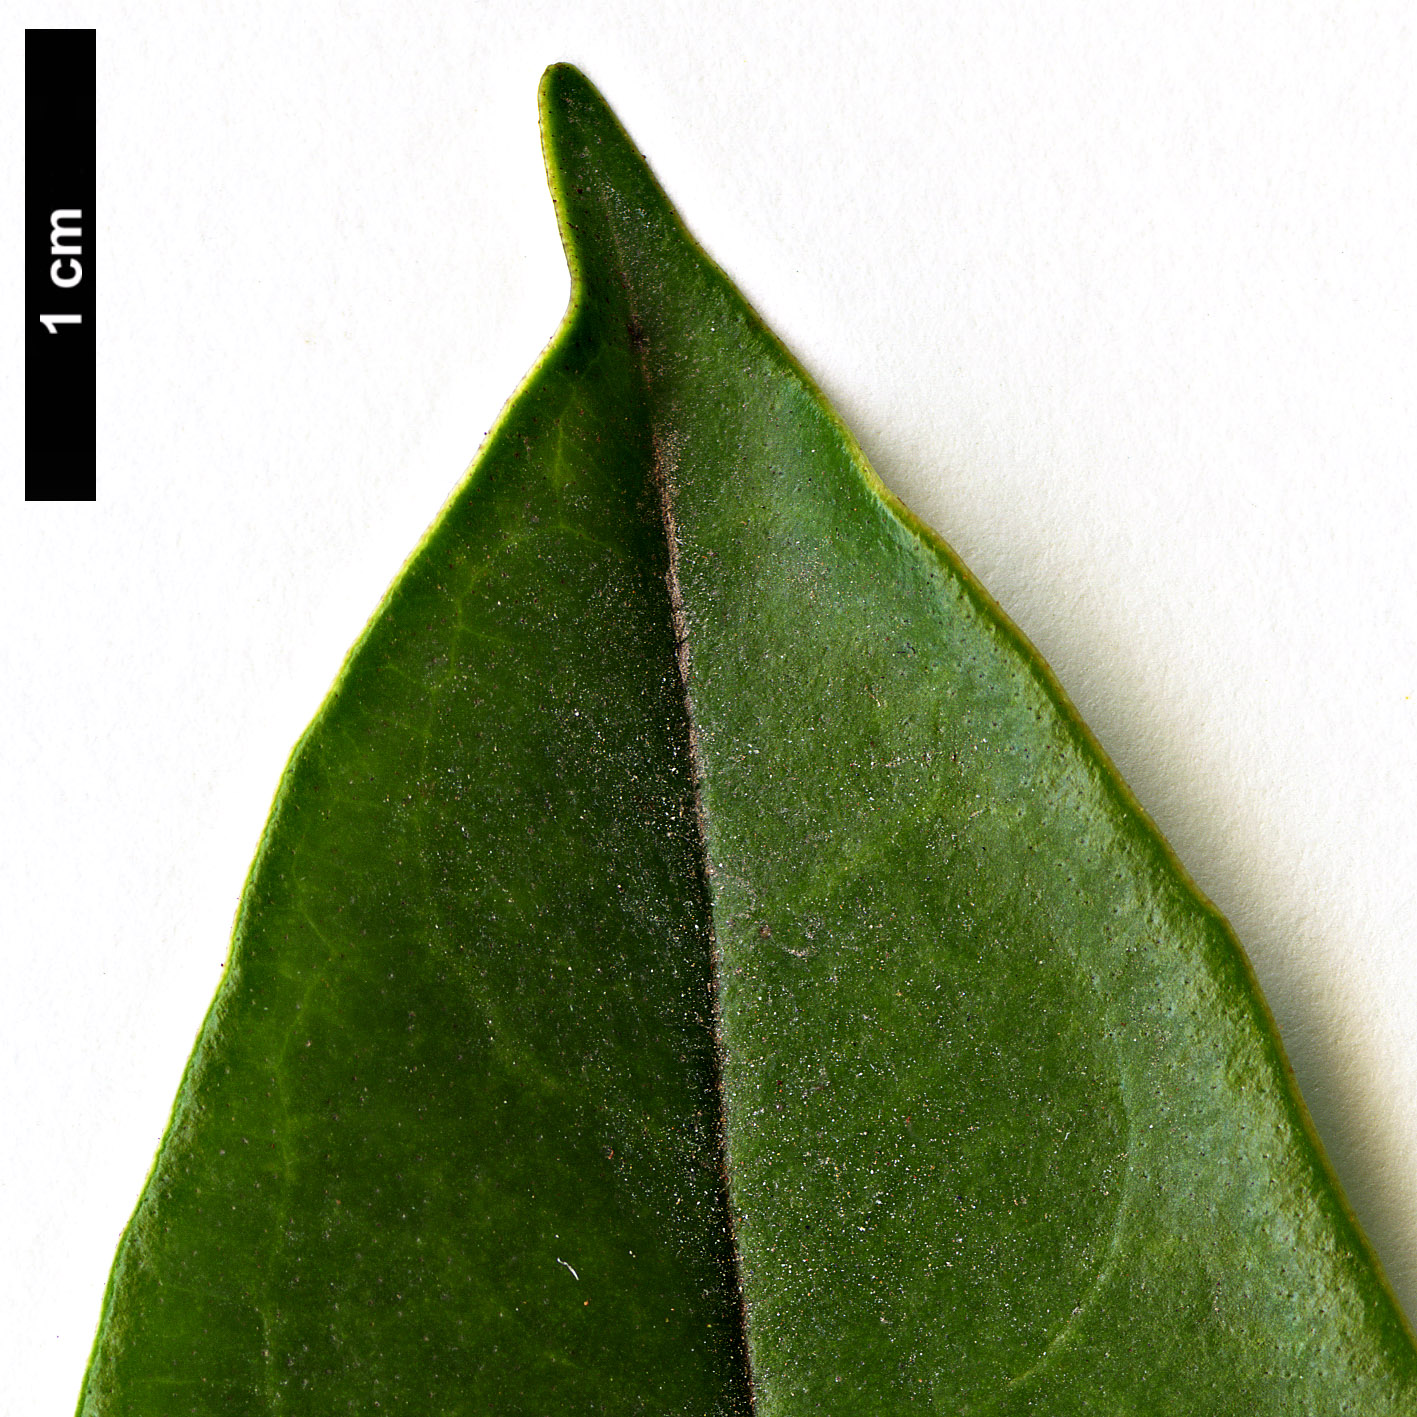 High resolution image: Family: Adoxaceae - Genus: Viburnum - Taxon: punctatum